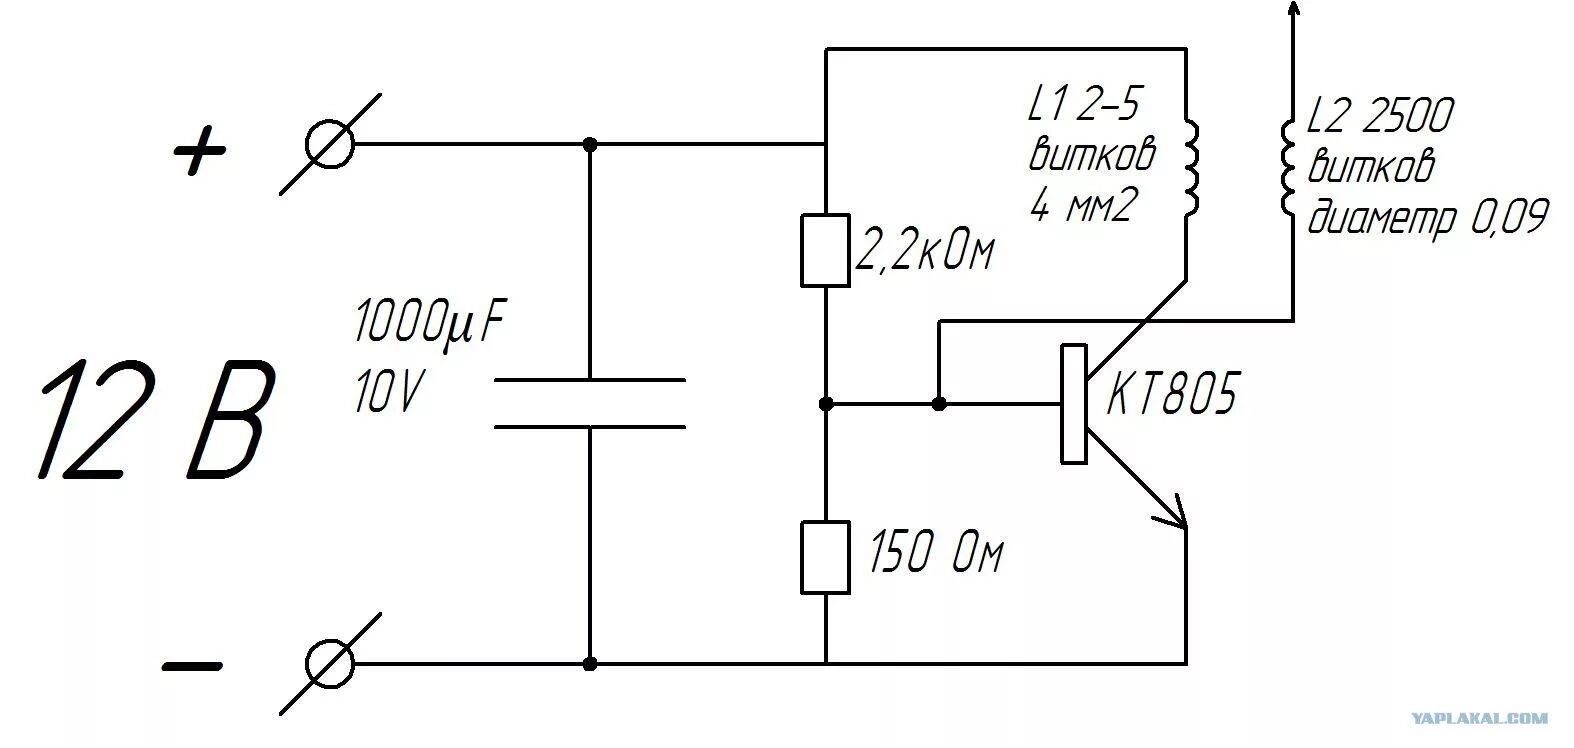 Схема катушки Тесла 12 вольт. Схема катушки Тесла на транзисторе кт805. Схема качер Бровина катушка Тесла. Катушка Тесла схеме качера Бровина.